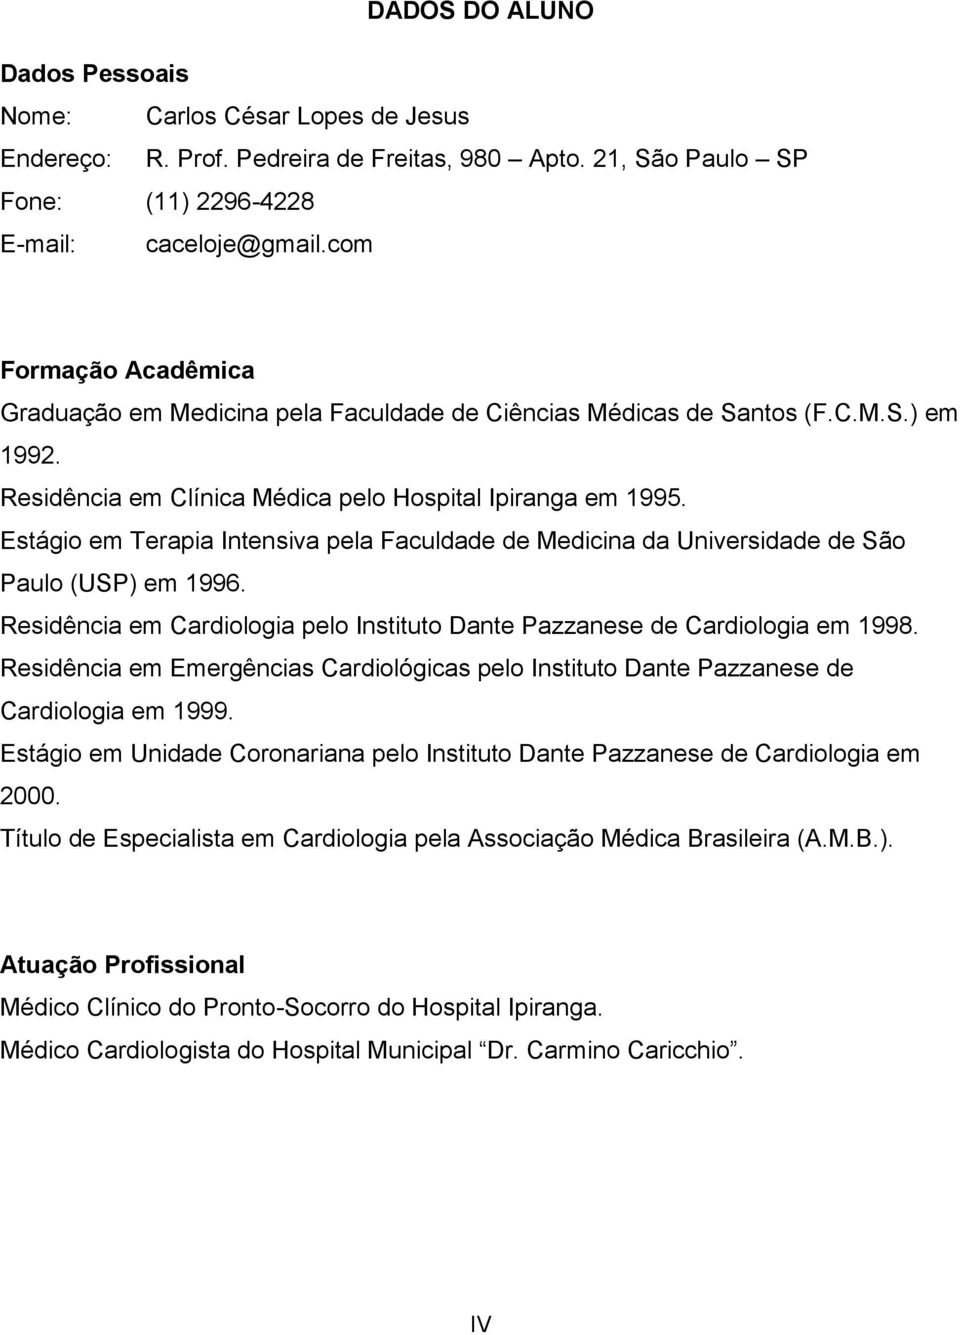 Estágio em Terapia Intensiva pela Faculdade de Medicina da Universidade de São Paulo (USP) em 1996. Residência em Cardiologia pelo Instituto Dante Pazzanese de Cardiologia em 1998.